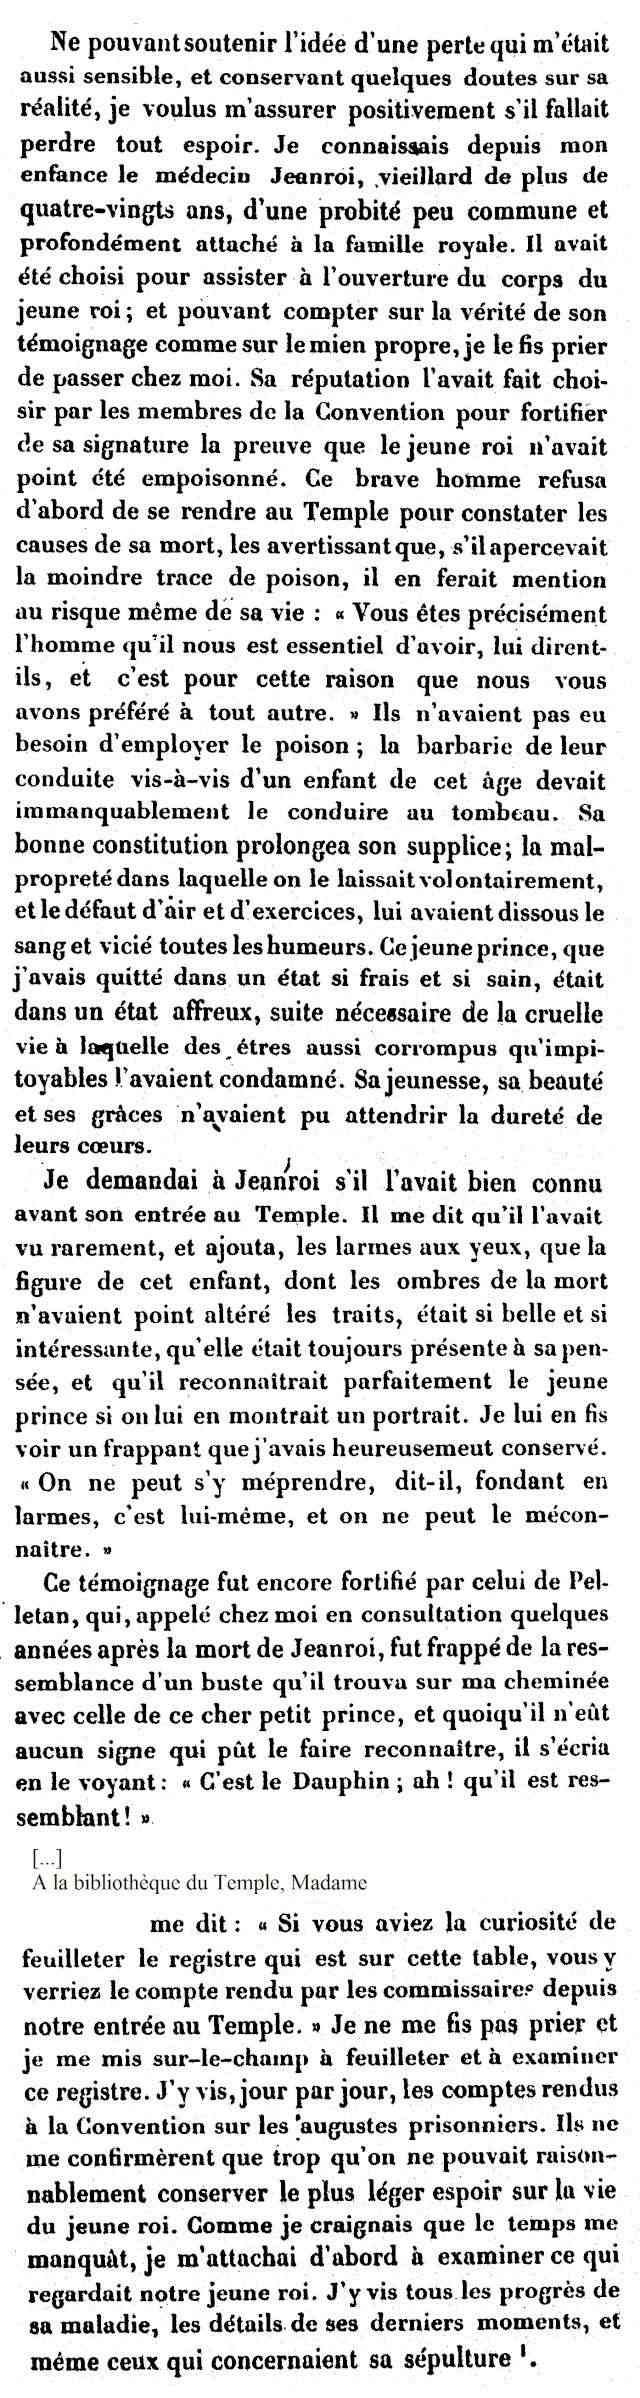 Louis XVII et "Le roi perdu", d'Octave Aubry. - Page 3 Nouvel86